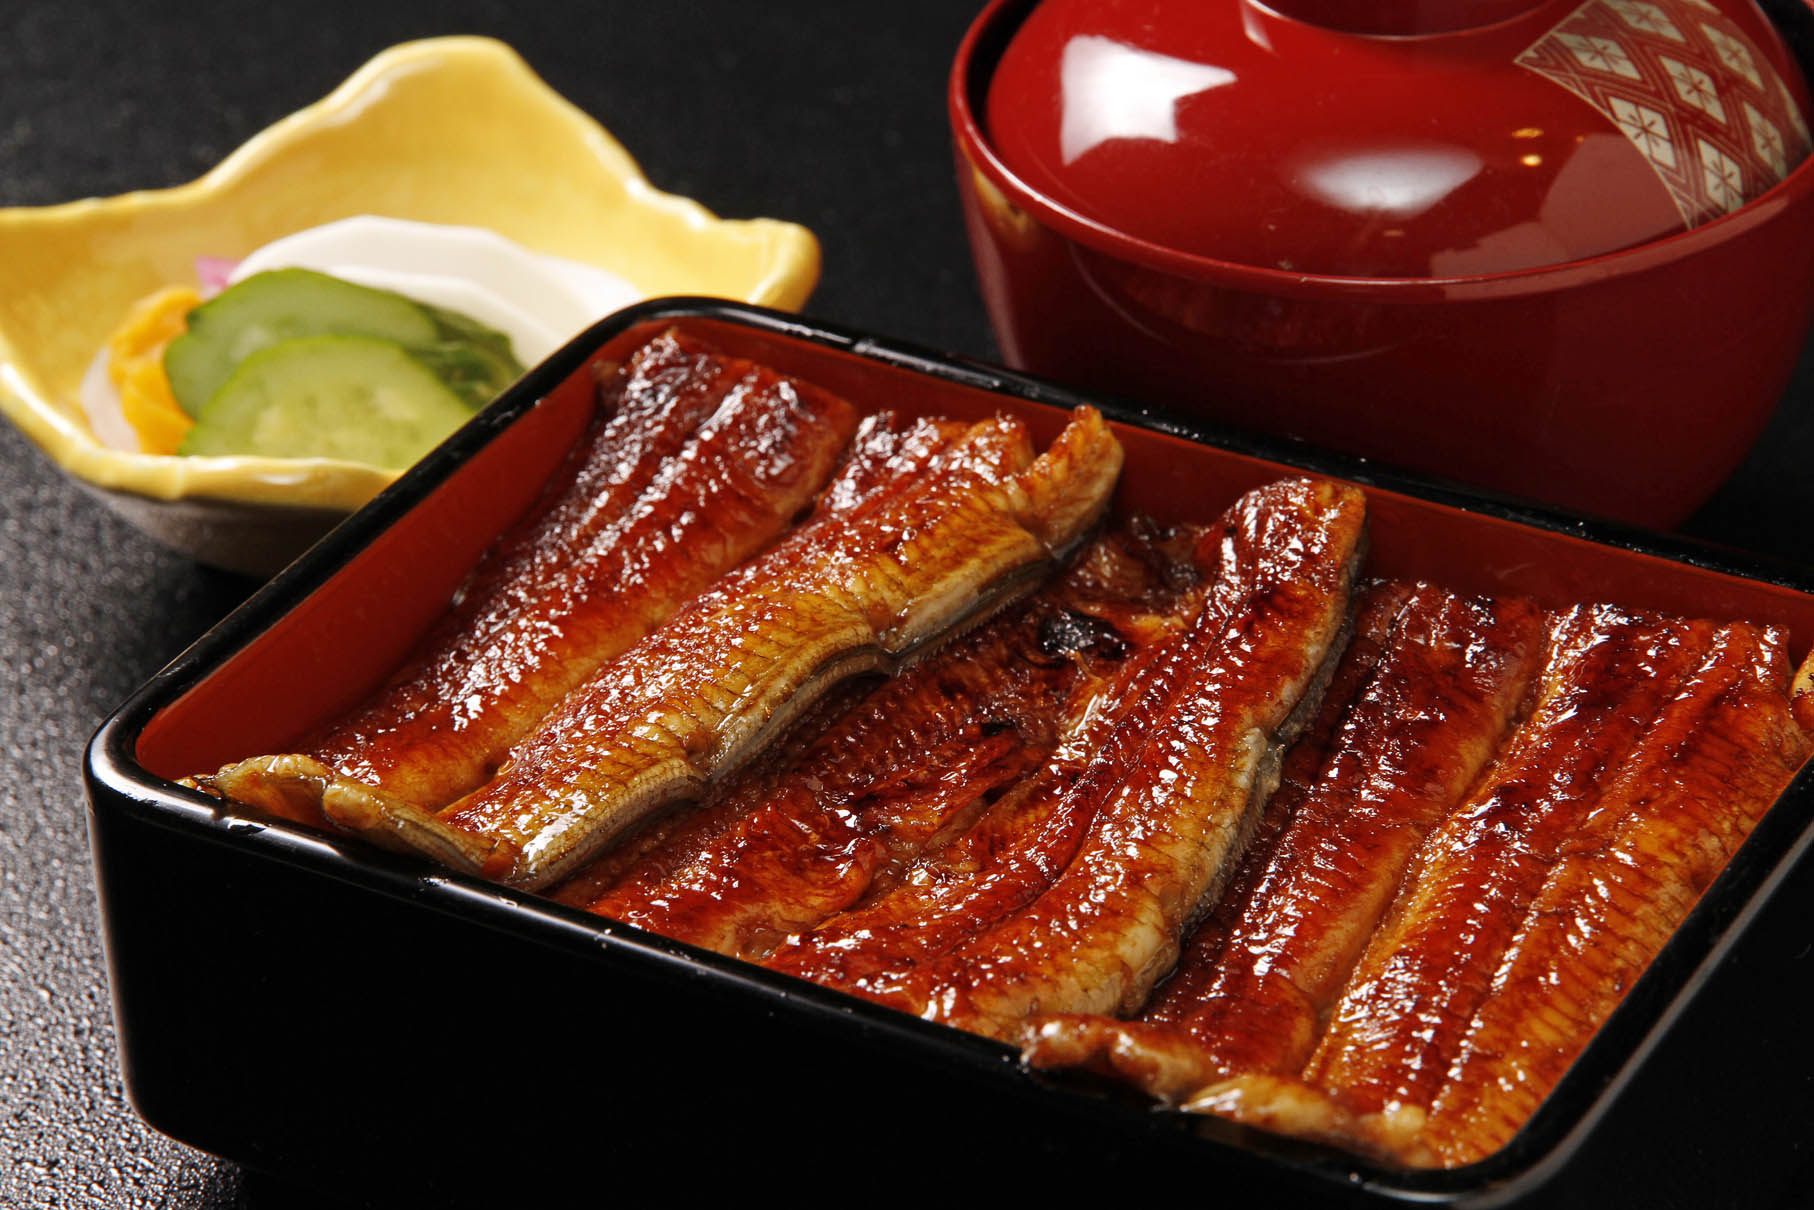 The "unaju" at Kawagoe Ichinoya uses the finest eel.